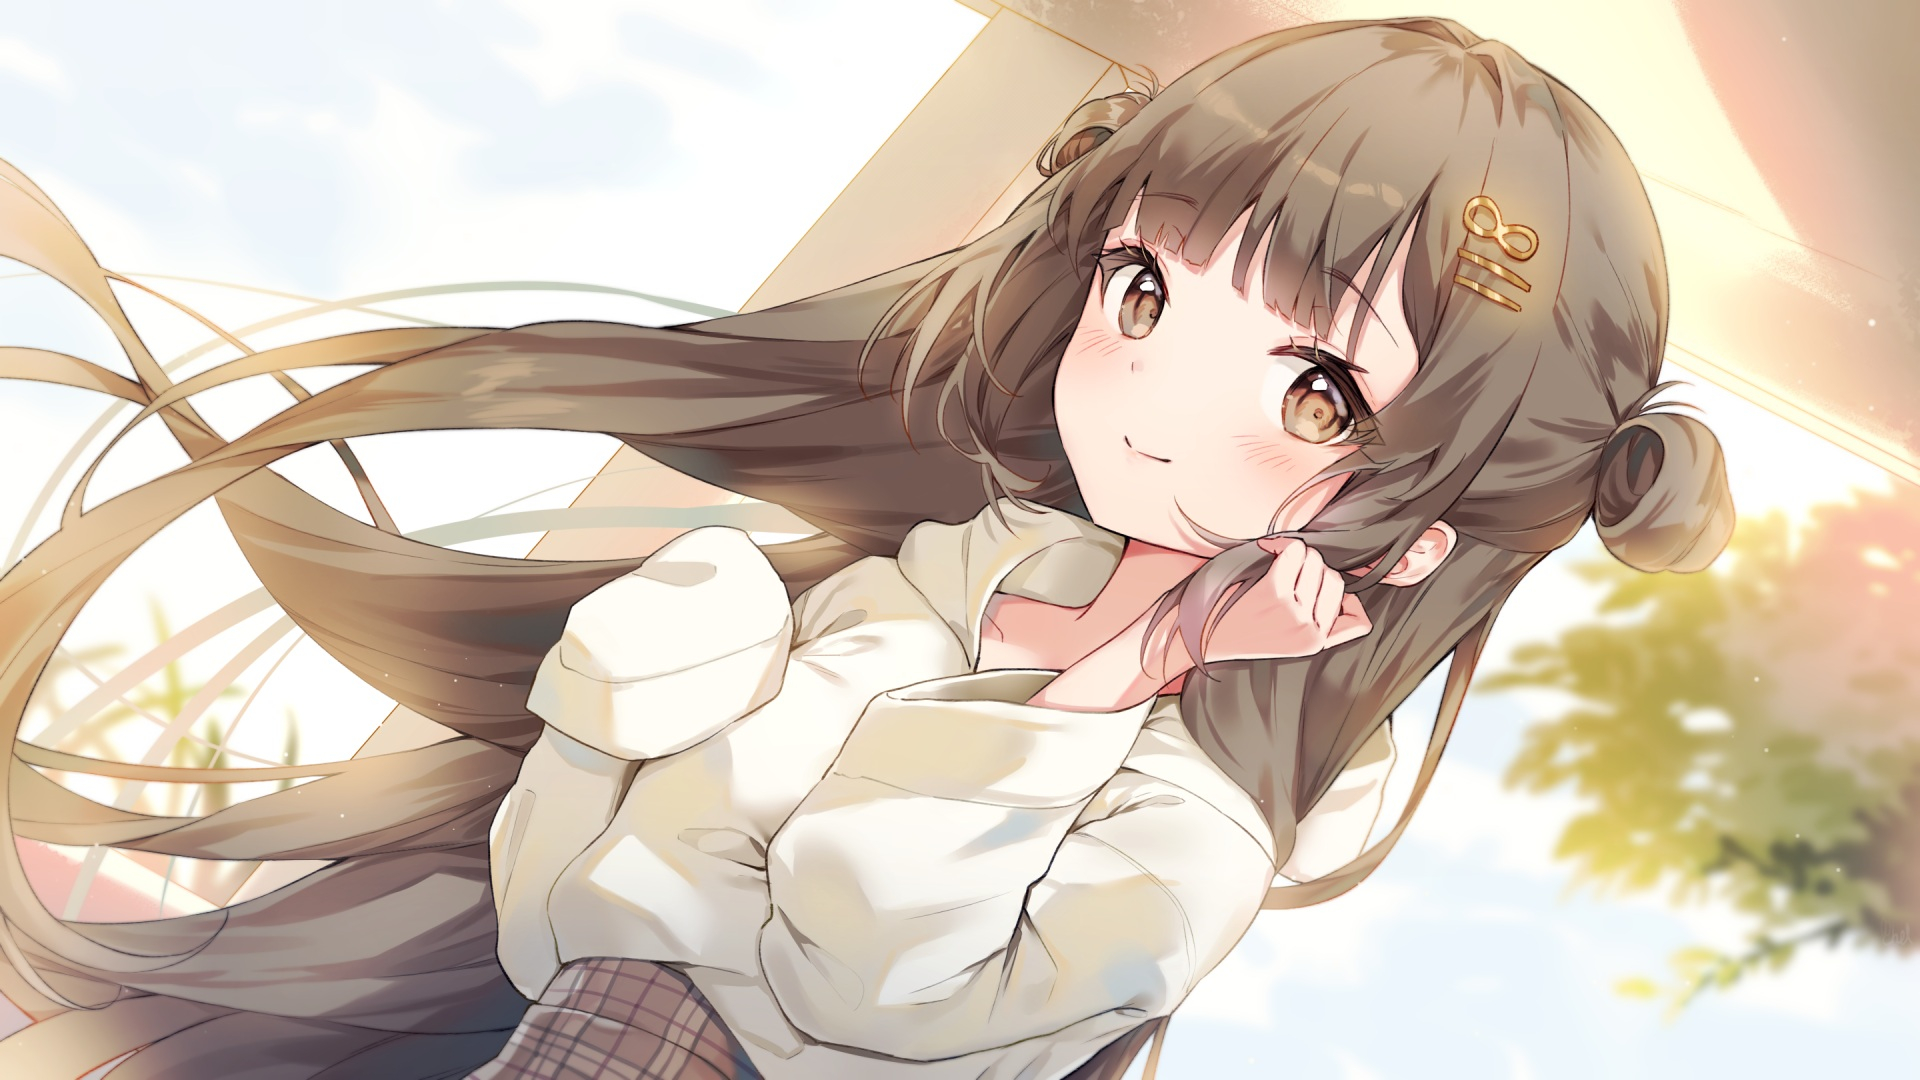 Photo Wallpaper Anime Girl Brown Hair Blushes Smiling Shirt